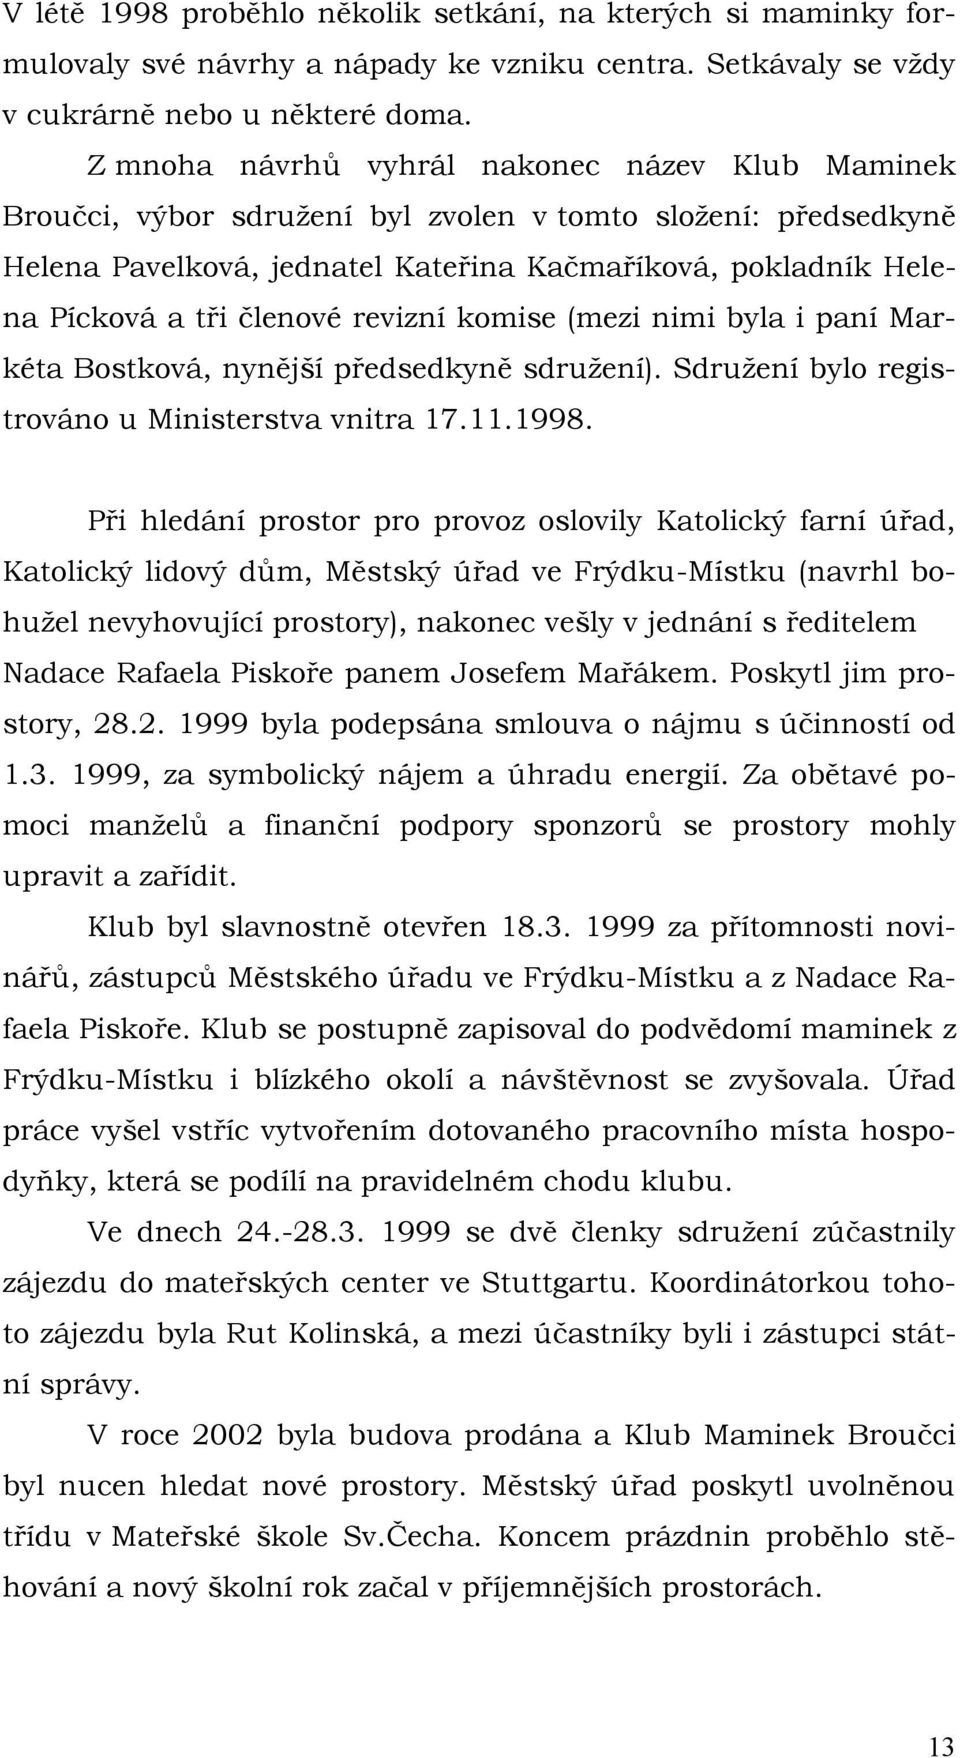 členové revizní komise (mezi nimi byla i paní Markéta Bostková, nynější předsedkyně sdruţení). Sdruţení bylo registrováno u Ministerstva vnitra 17.11.1998.